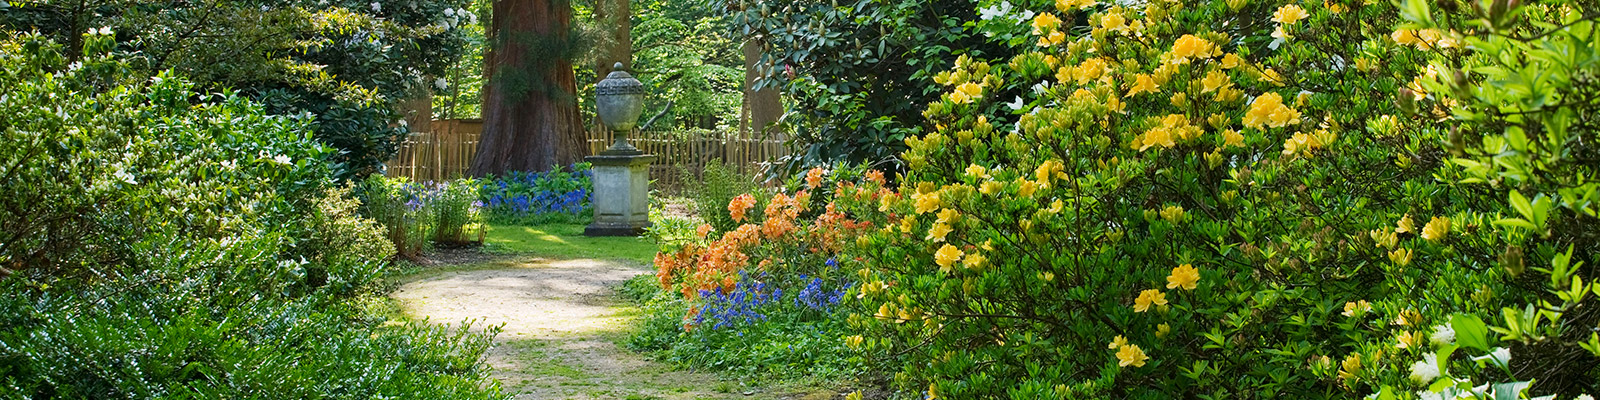 Doddington Place Gardens - Woodland Garden